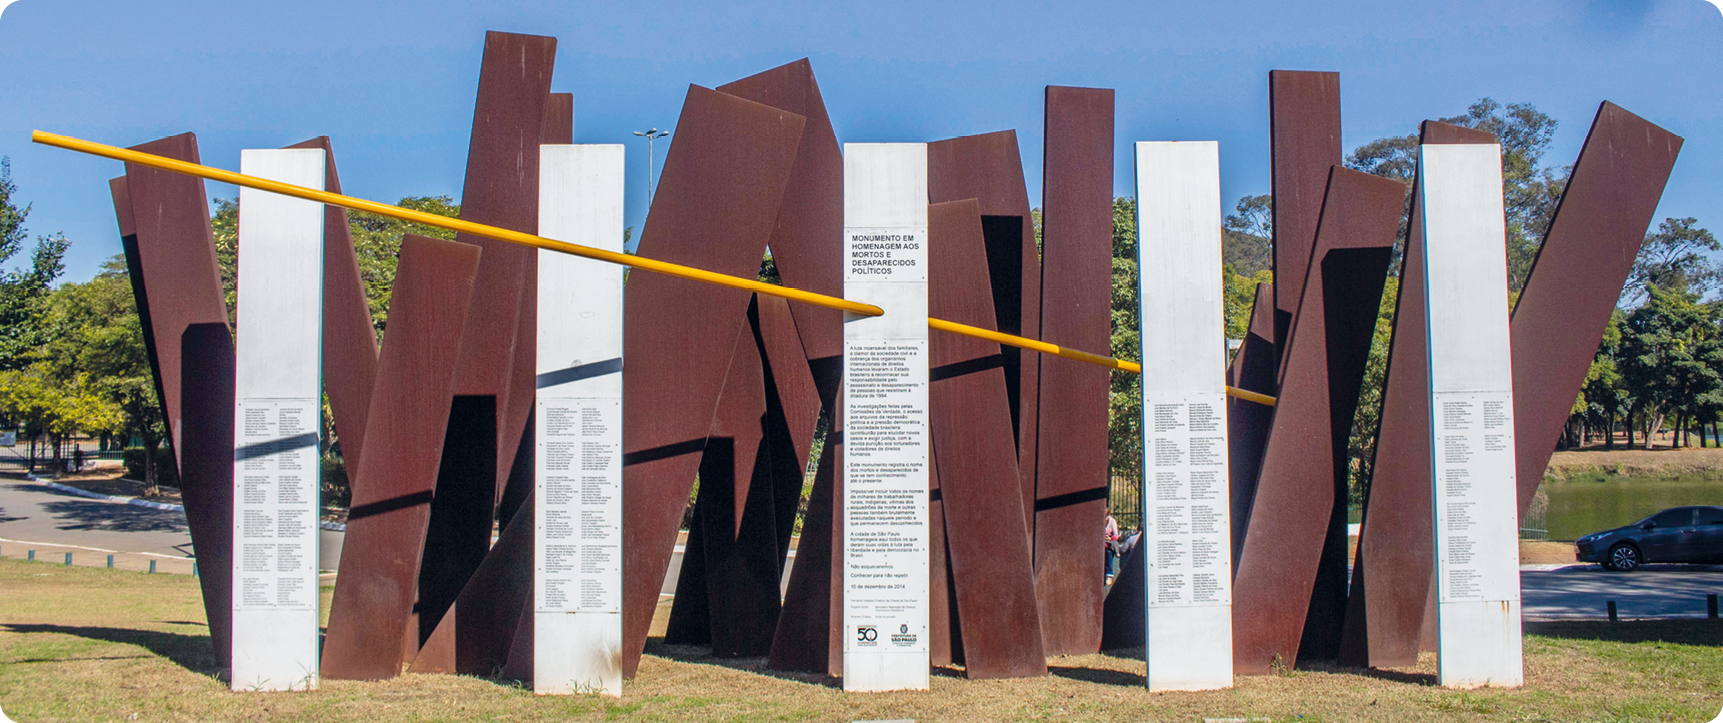 Fotografia. Monumento composto por colunas de metal cruzadas com textos sobre elas. Uma haste amarela atravessa as colunas.